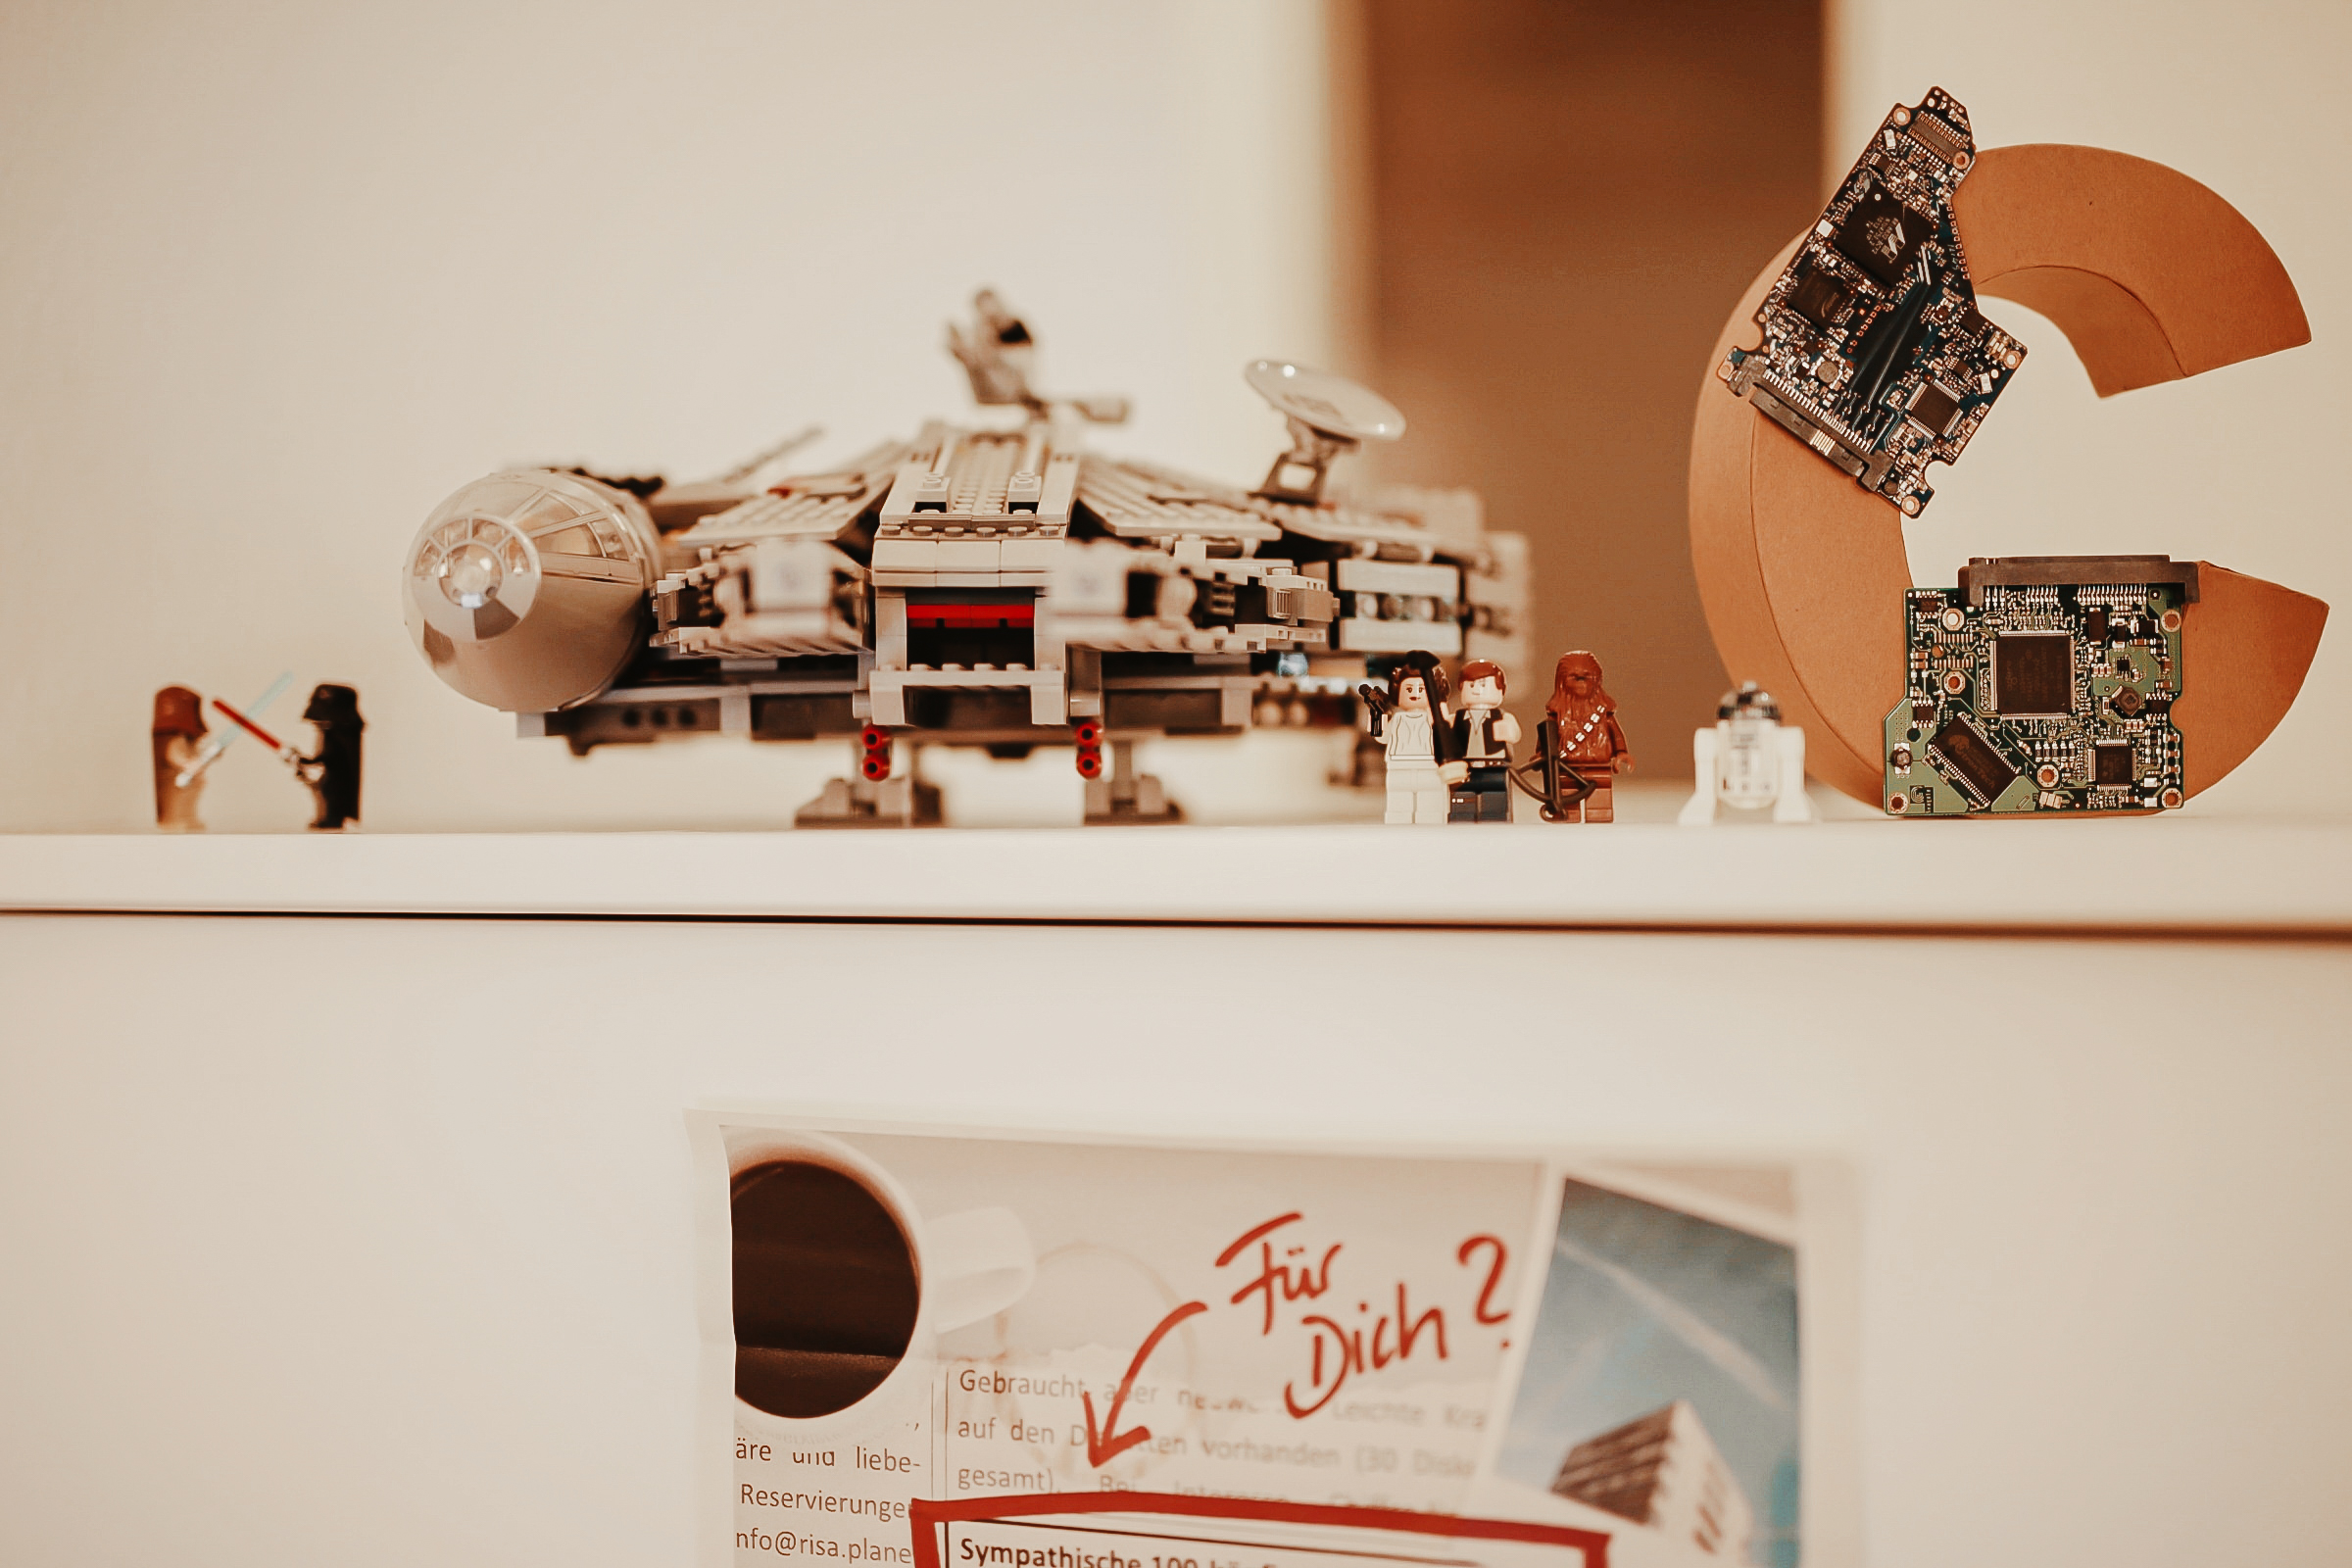 Auf einem Schrank steht ein Playmobil Schiff von Star Wars sowie ein aus Pappe gefertigtes C. davor stehen einige Playmobilfiguren von Star Wars.